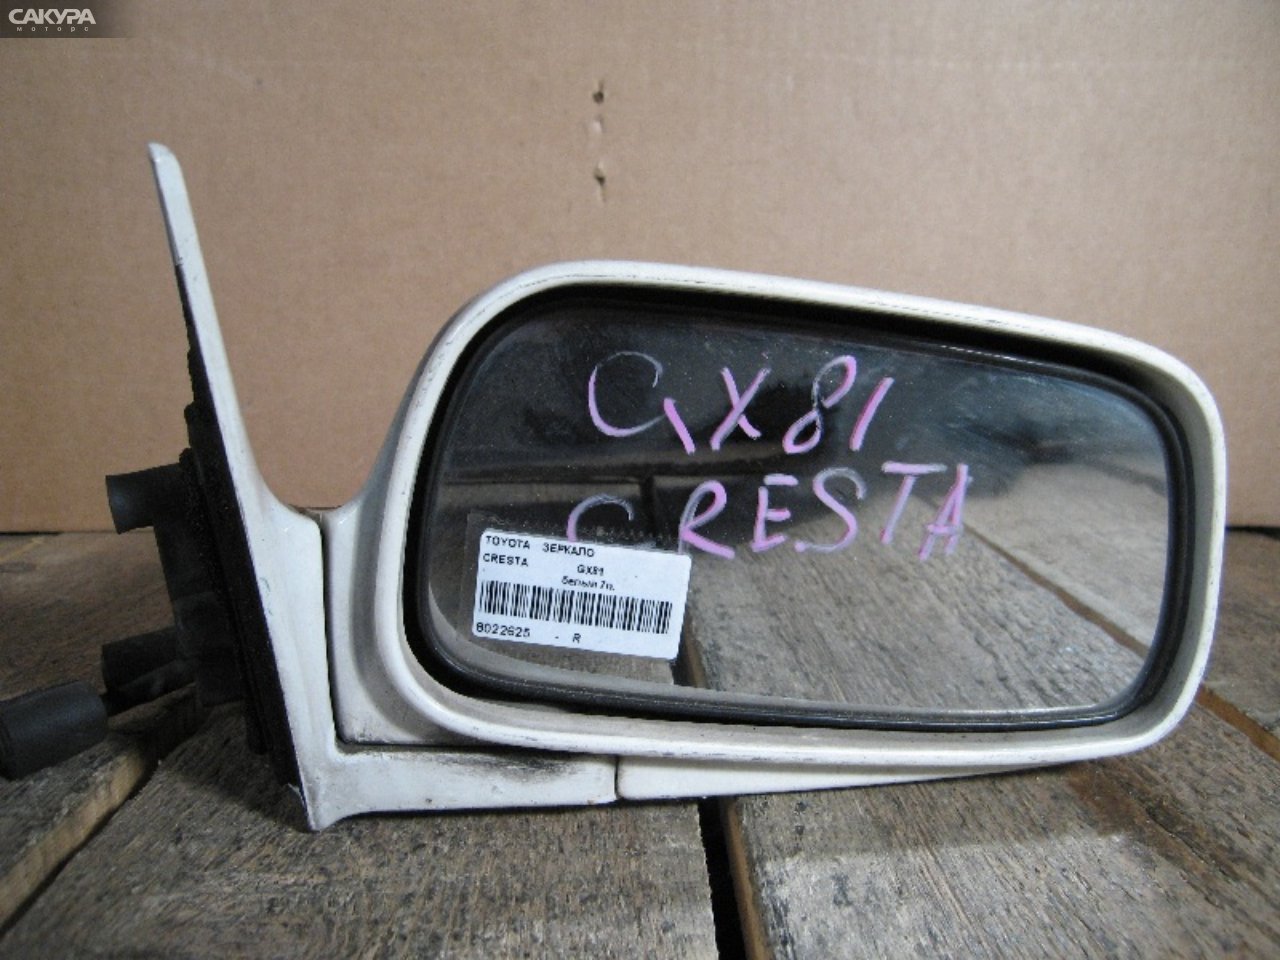 Зеркало боковое правое Toyota Cresta GX81: купить в Сакура Абакан.